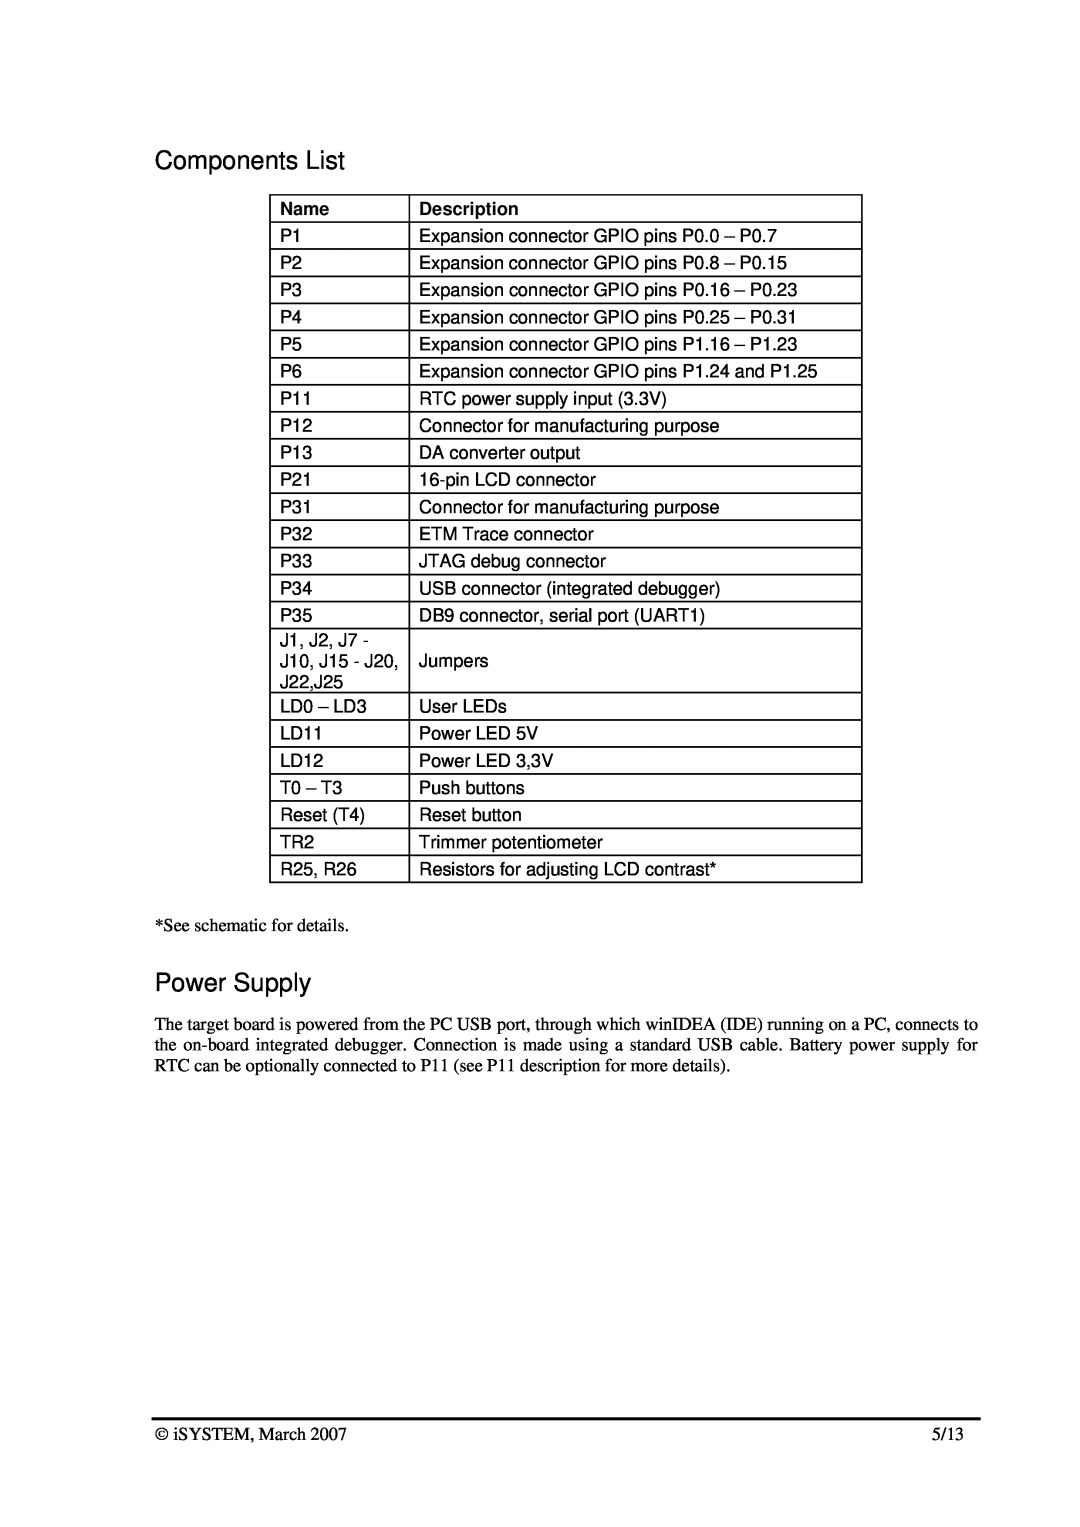 Philips LPC2138 dimensions Components List, Power Supply, Name, Description 